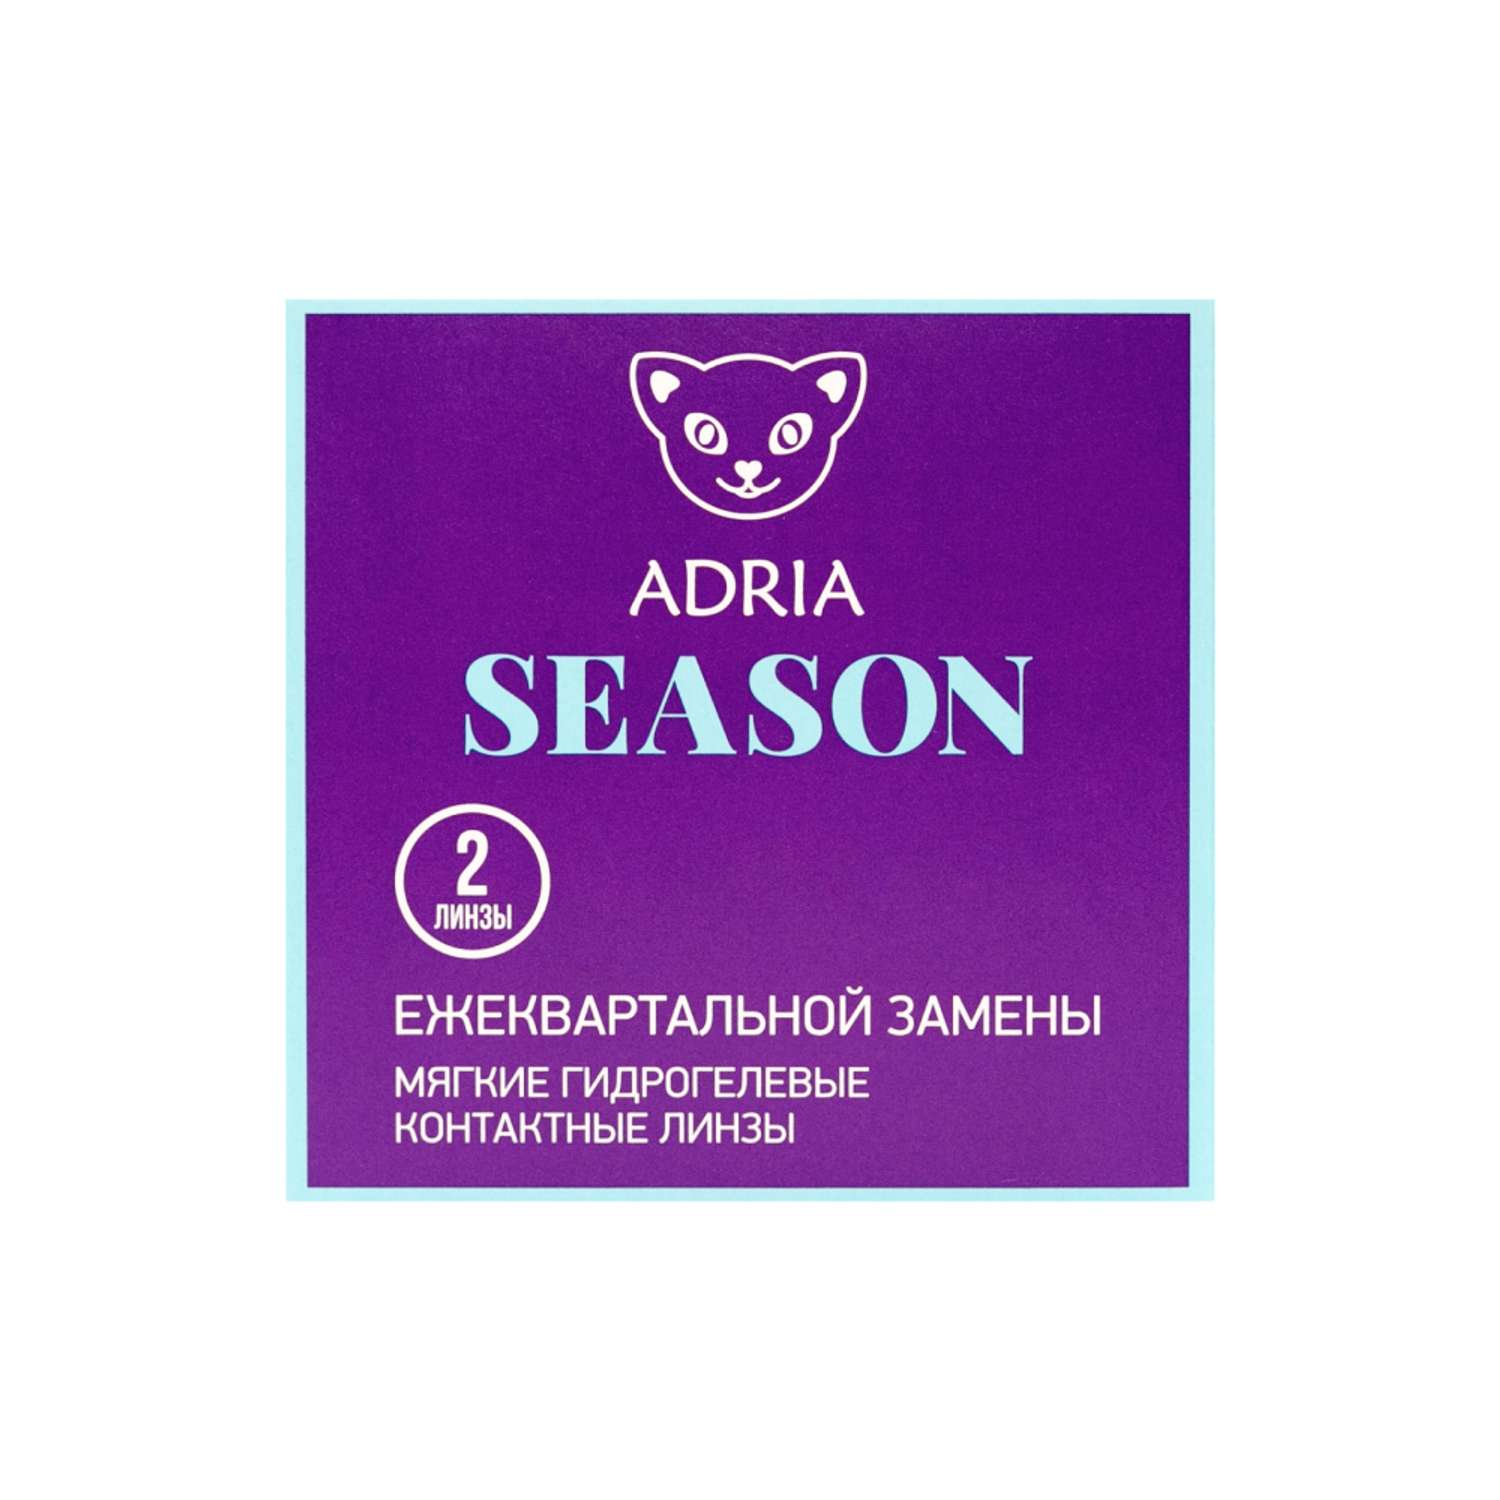 Контактные линзы ADRIA Season 2 линзы R 8.6 -2.75 - фото 6